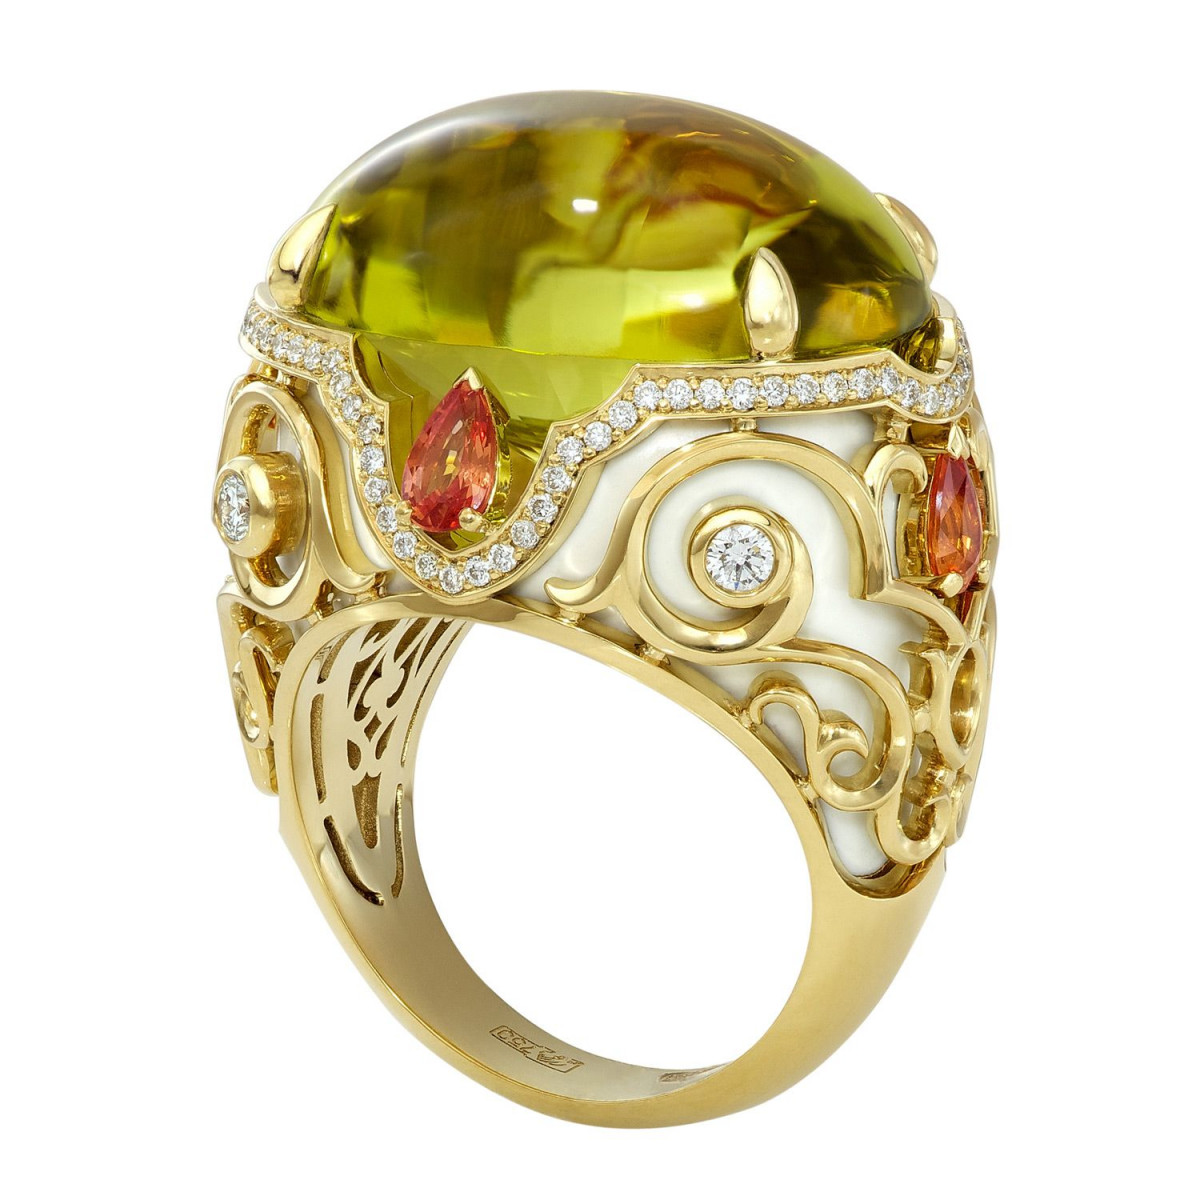 Золотое кольцо с драгоценными камнями